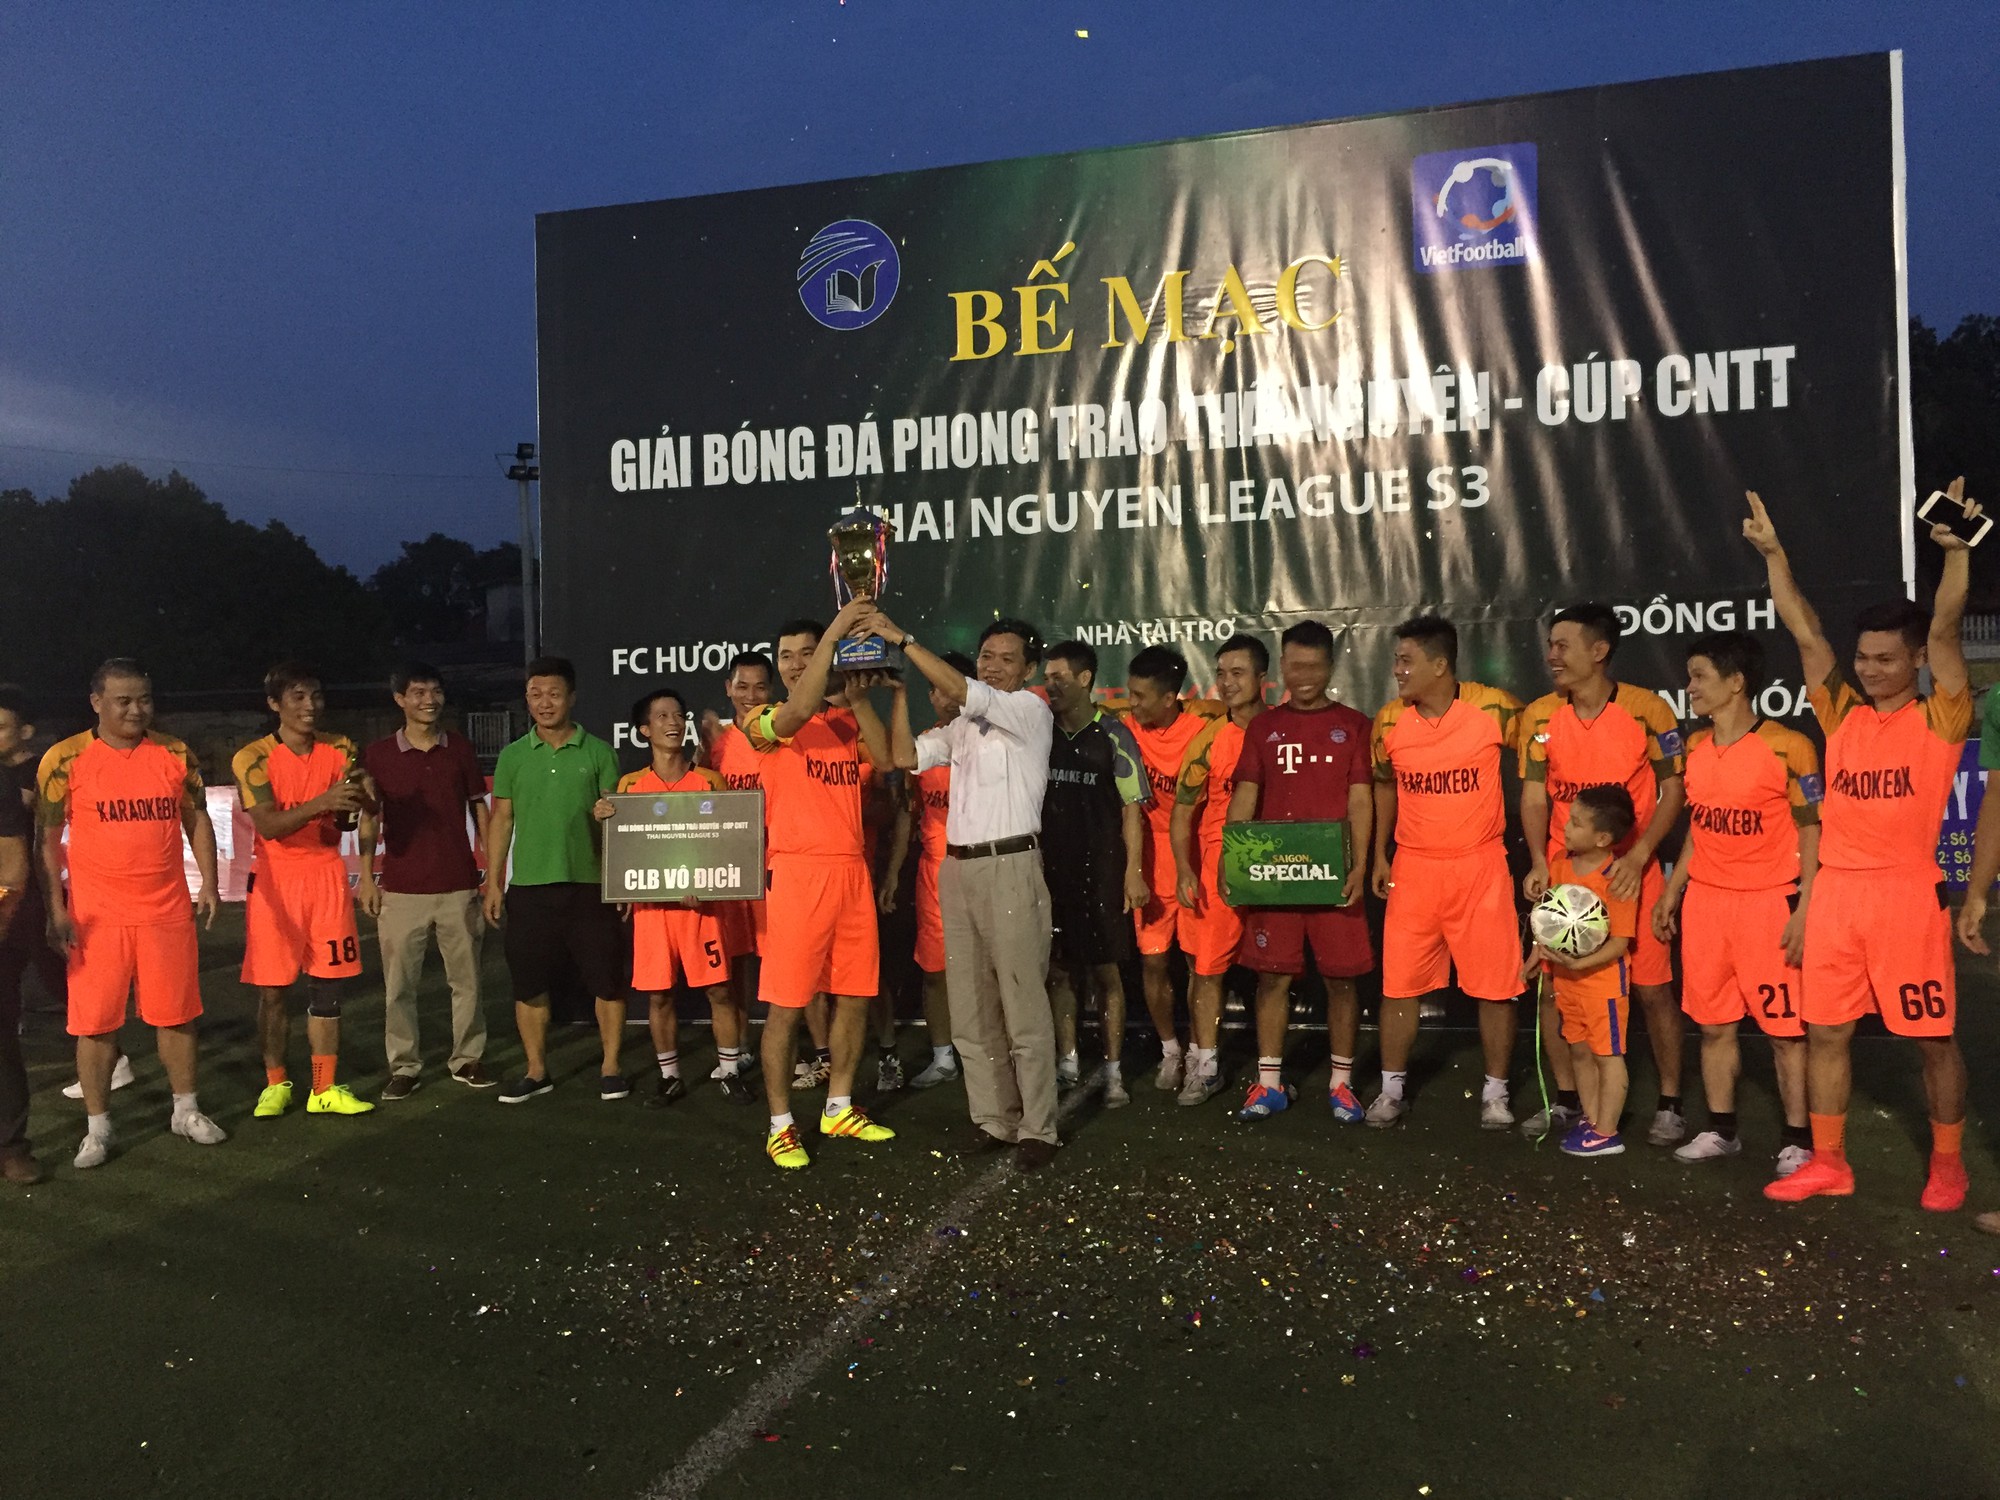 C&C trở thành nhà vua mới của Thái Nguyên League lần 3 - Cúp CNTT